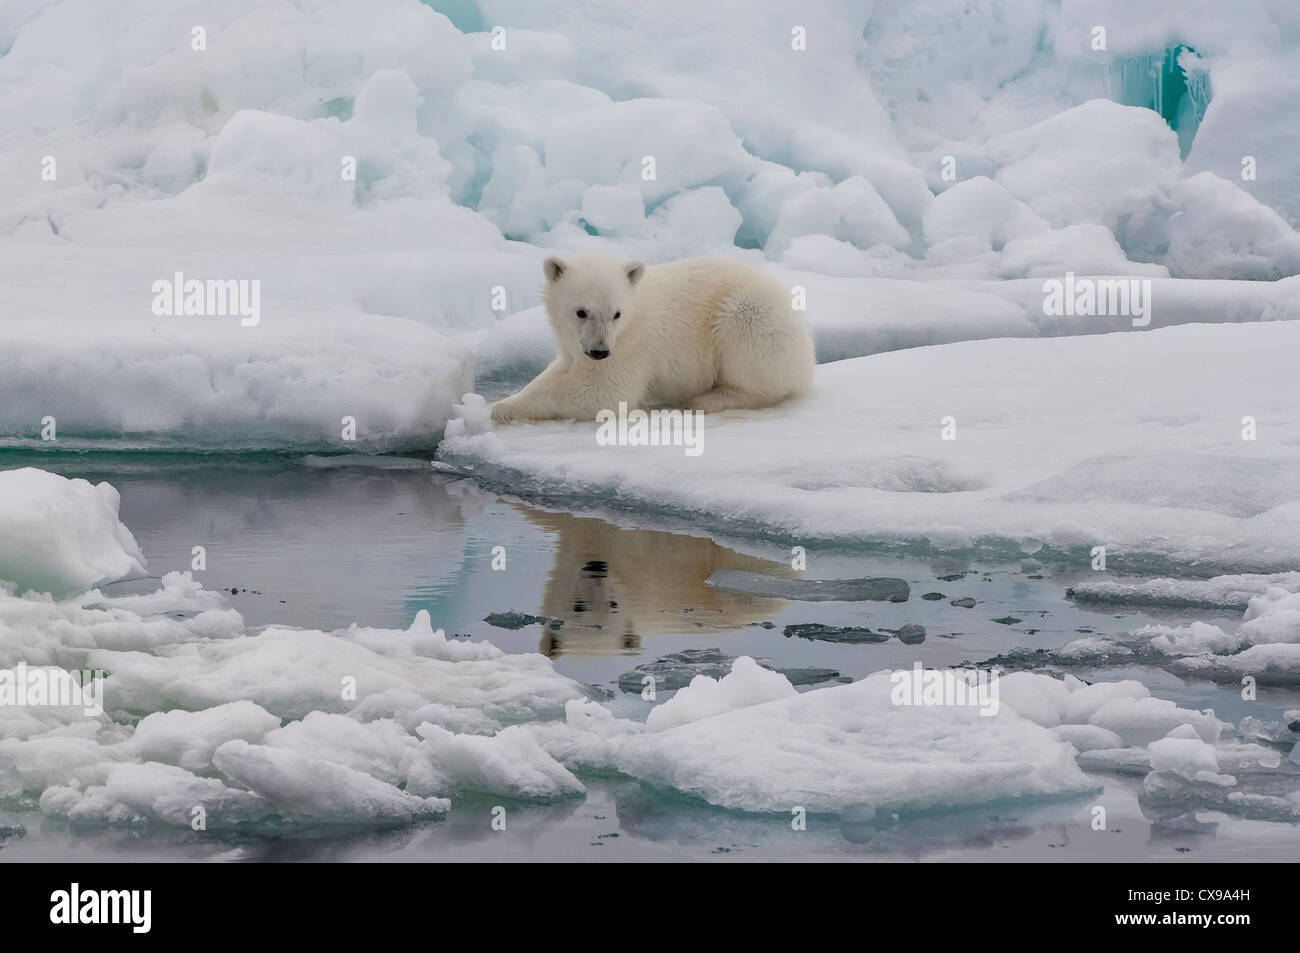 L'ours polaire (Ursus maritimus) cub se reflétant dans l'eau, l'archipel du Svalbard, mer de Barents, Norvège Banque D'Images